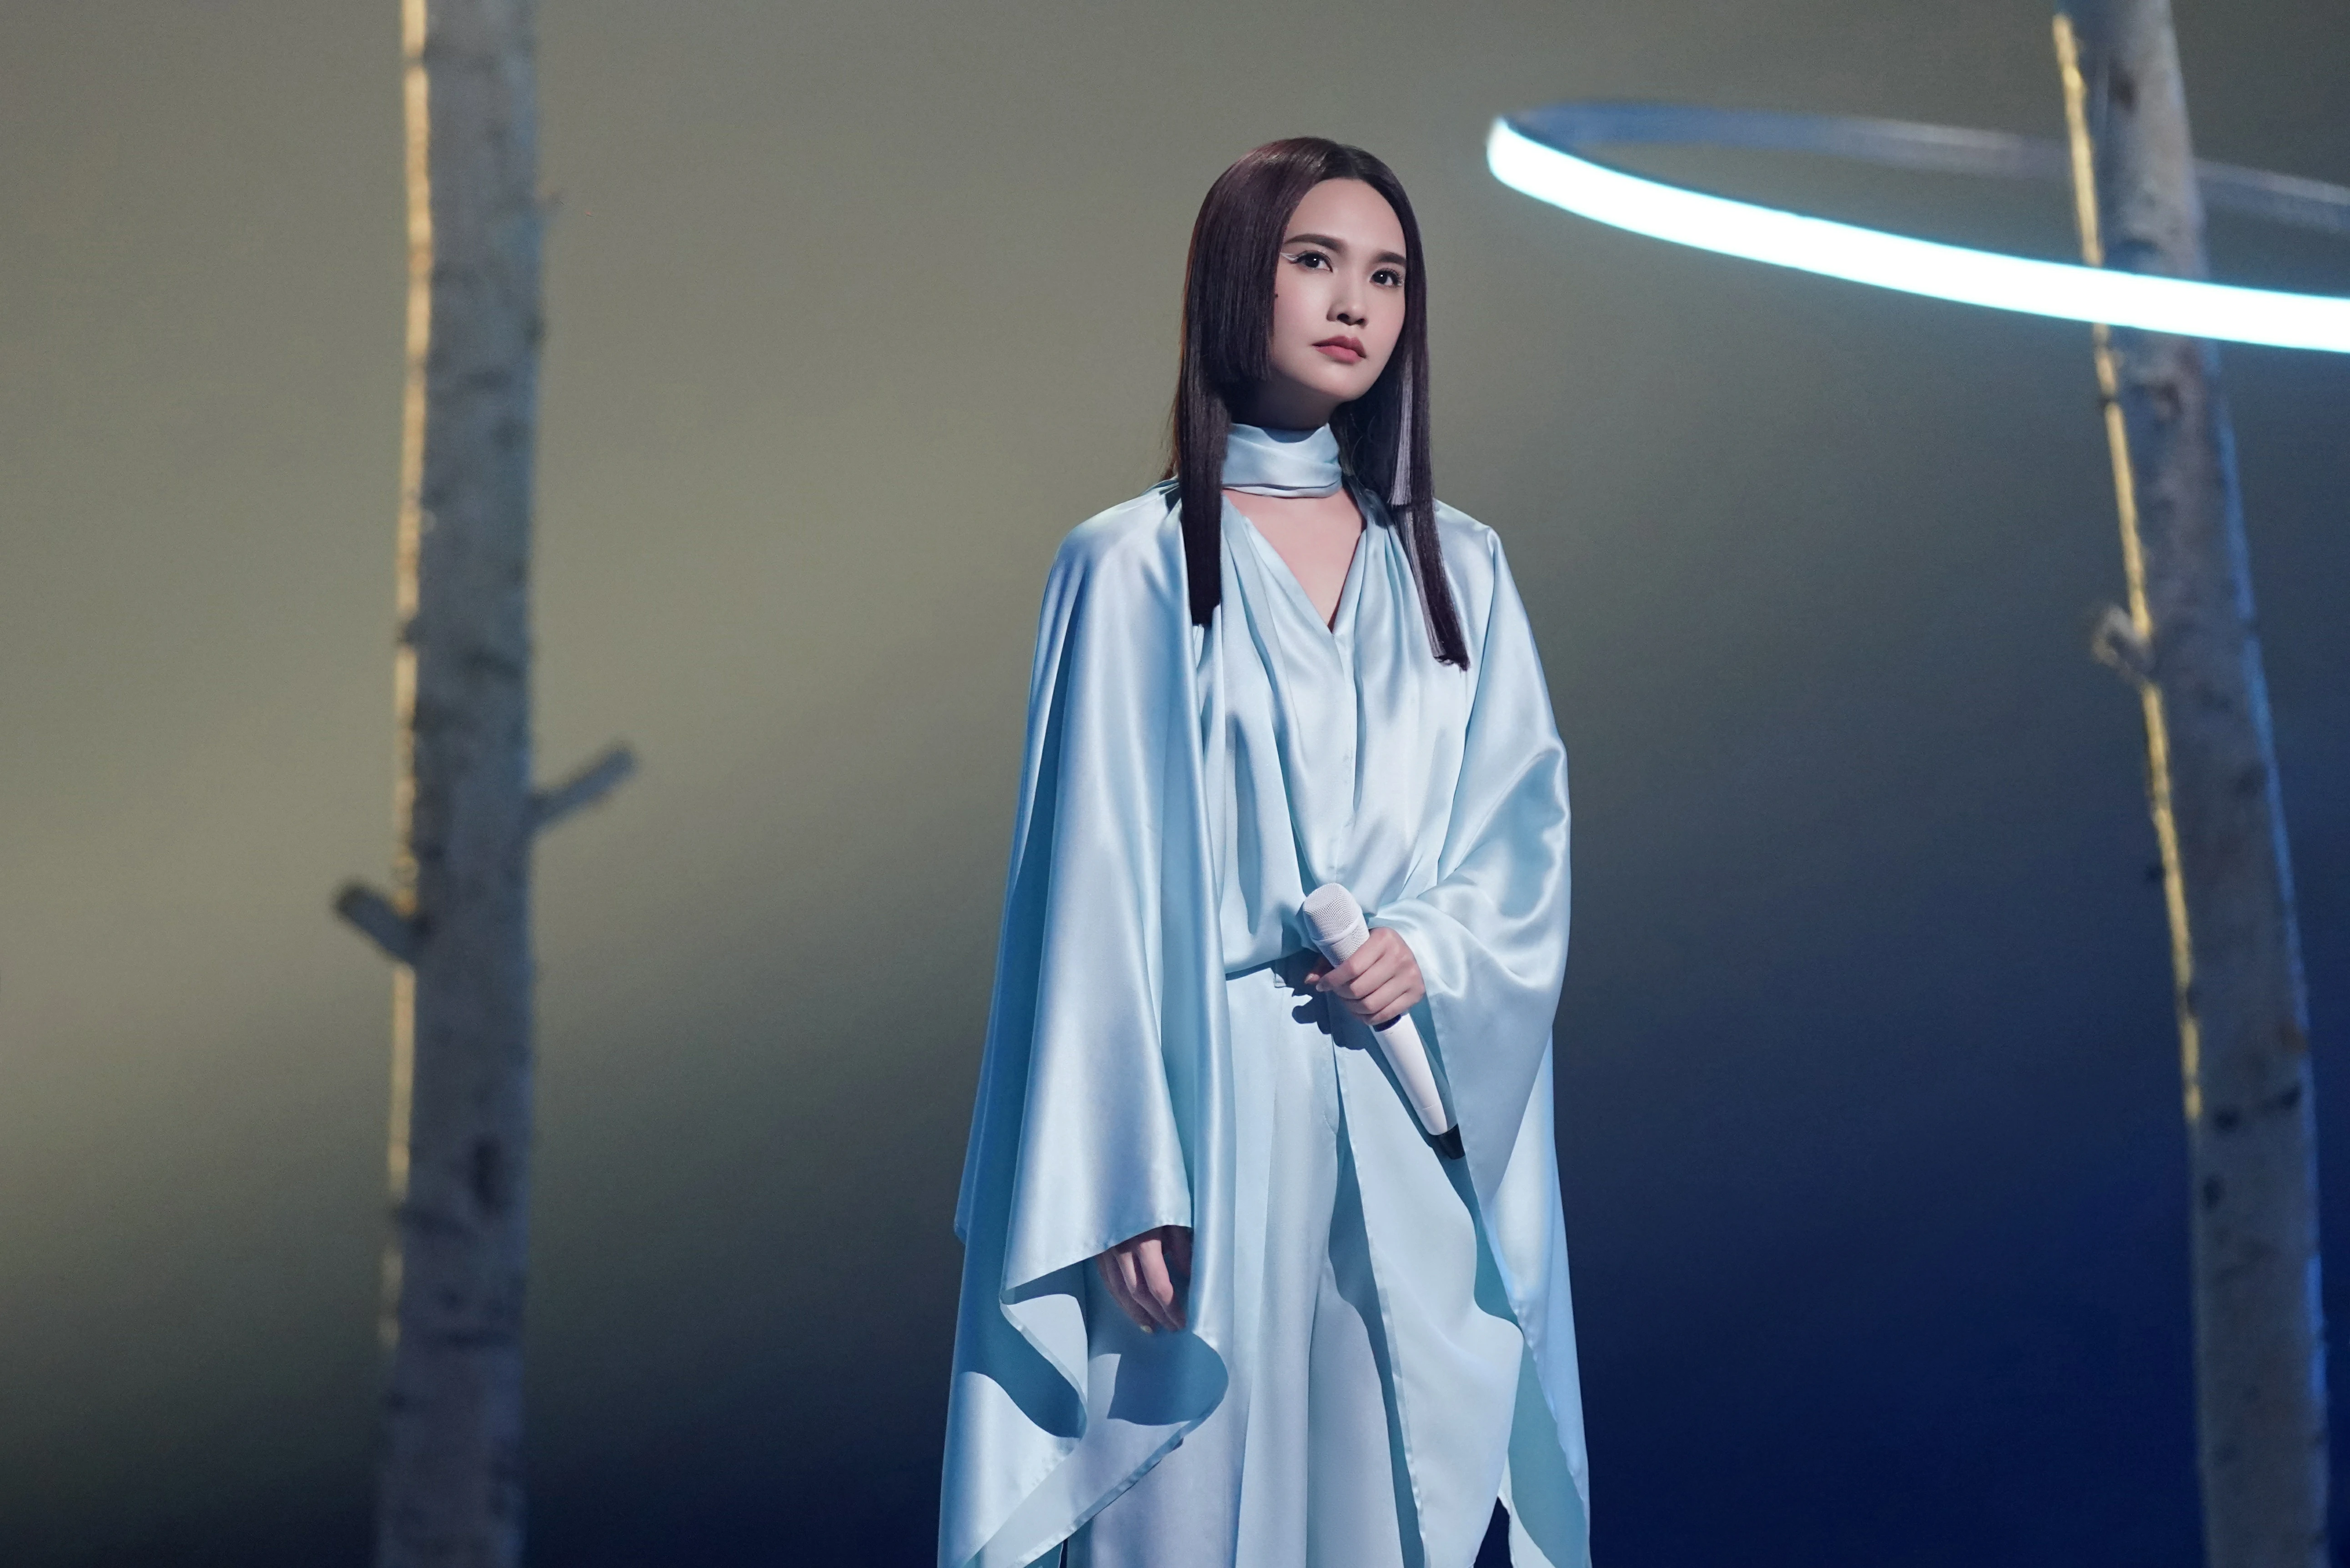 杨丞琳亮相本周《闪光的乐队》 挑染公主切造型带来《天堂》舞台,20